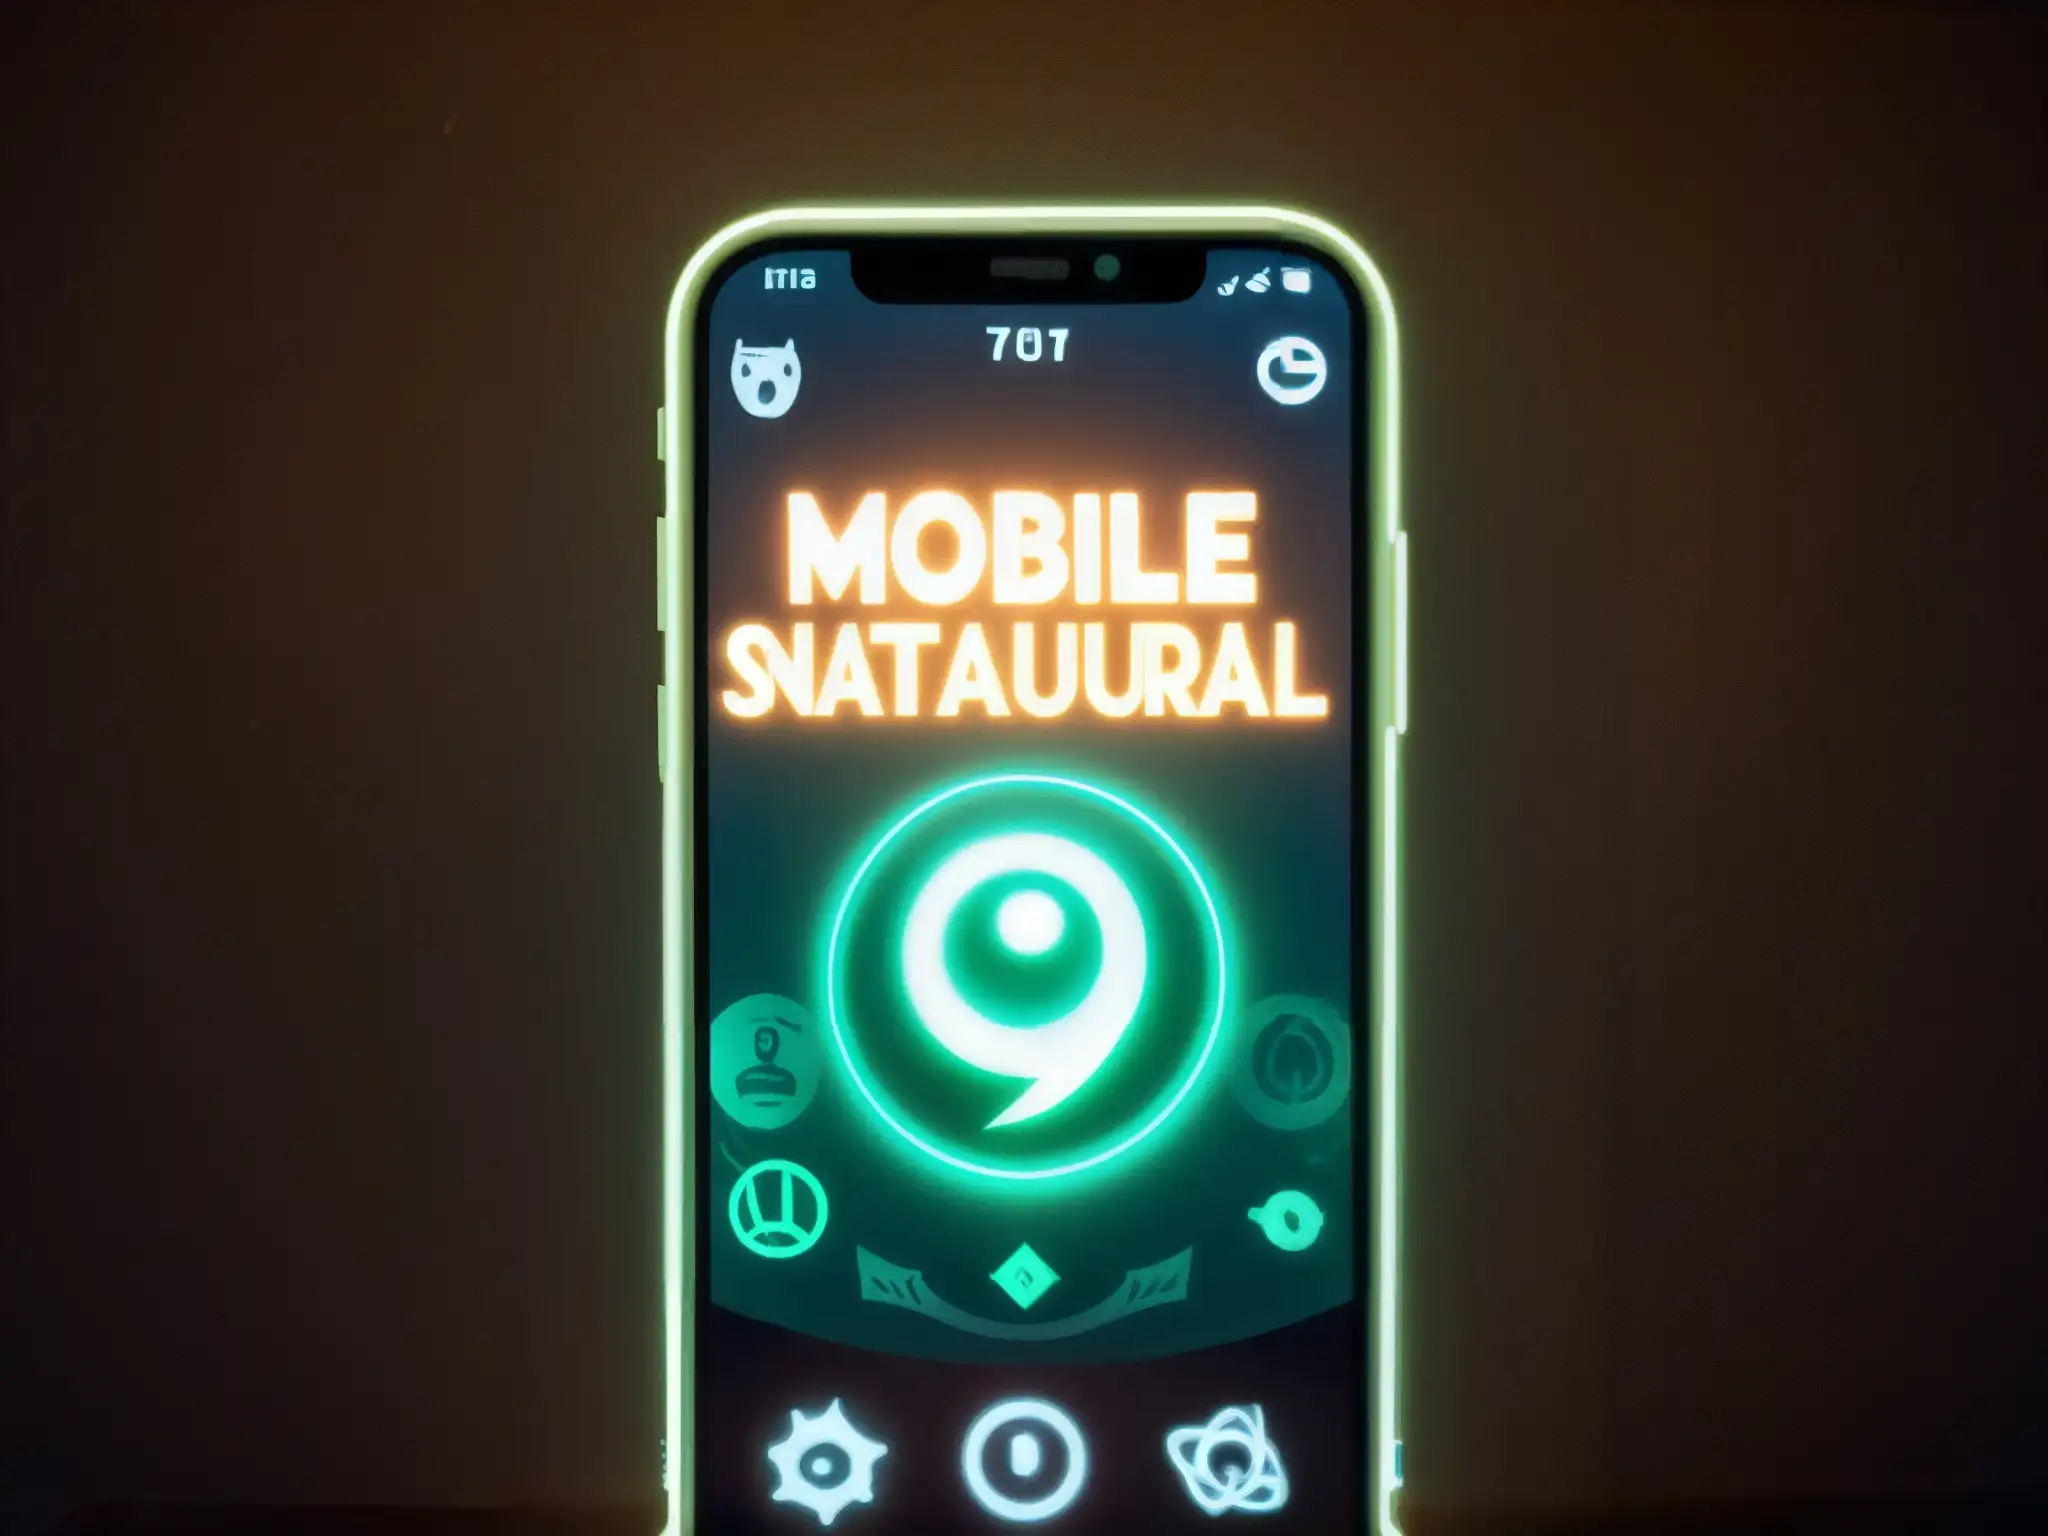 Un ambiente misterioso y sobrenatural se refleja en la pantalla del teléfono con la app mientras una figura fantasmal emerge